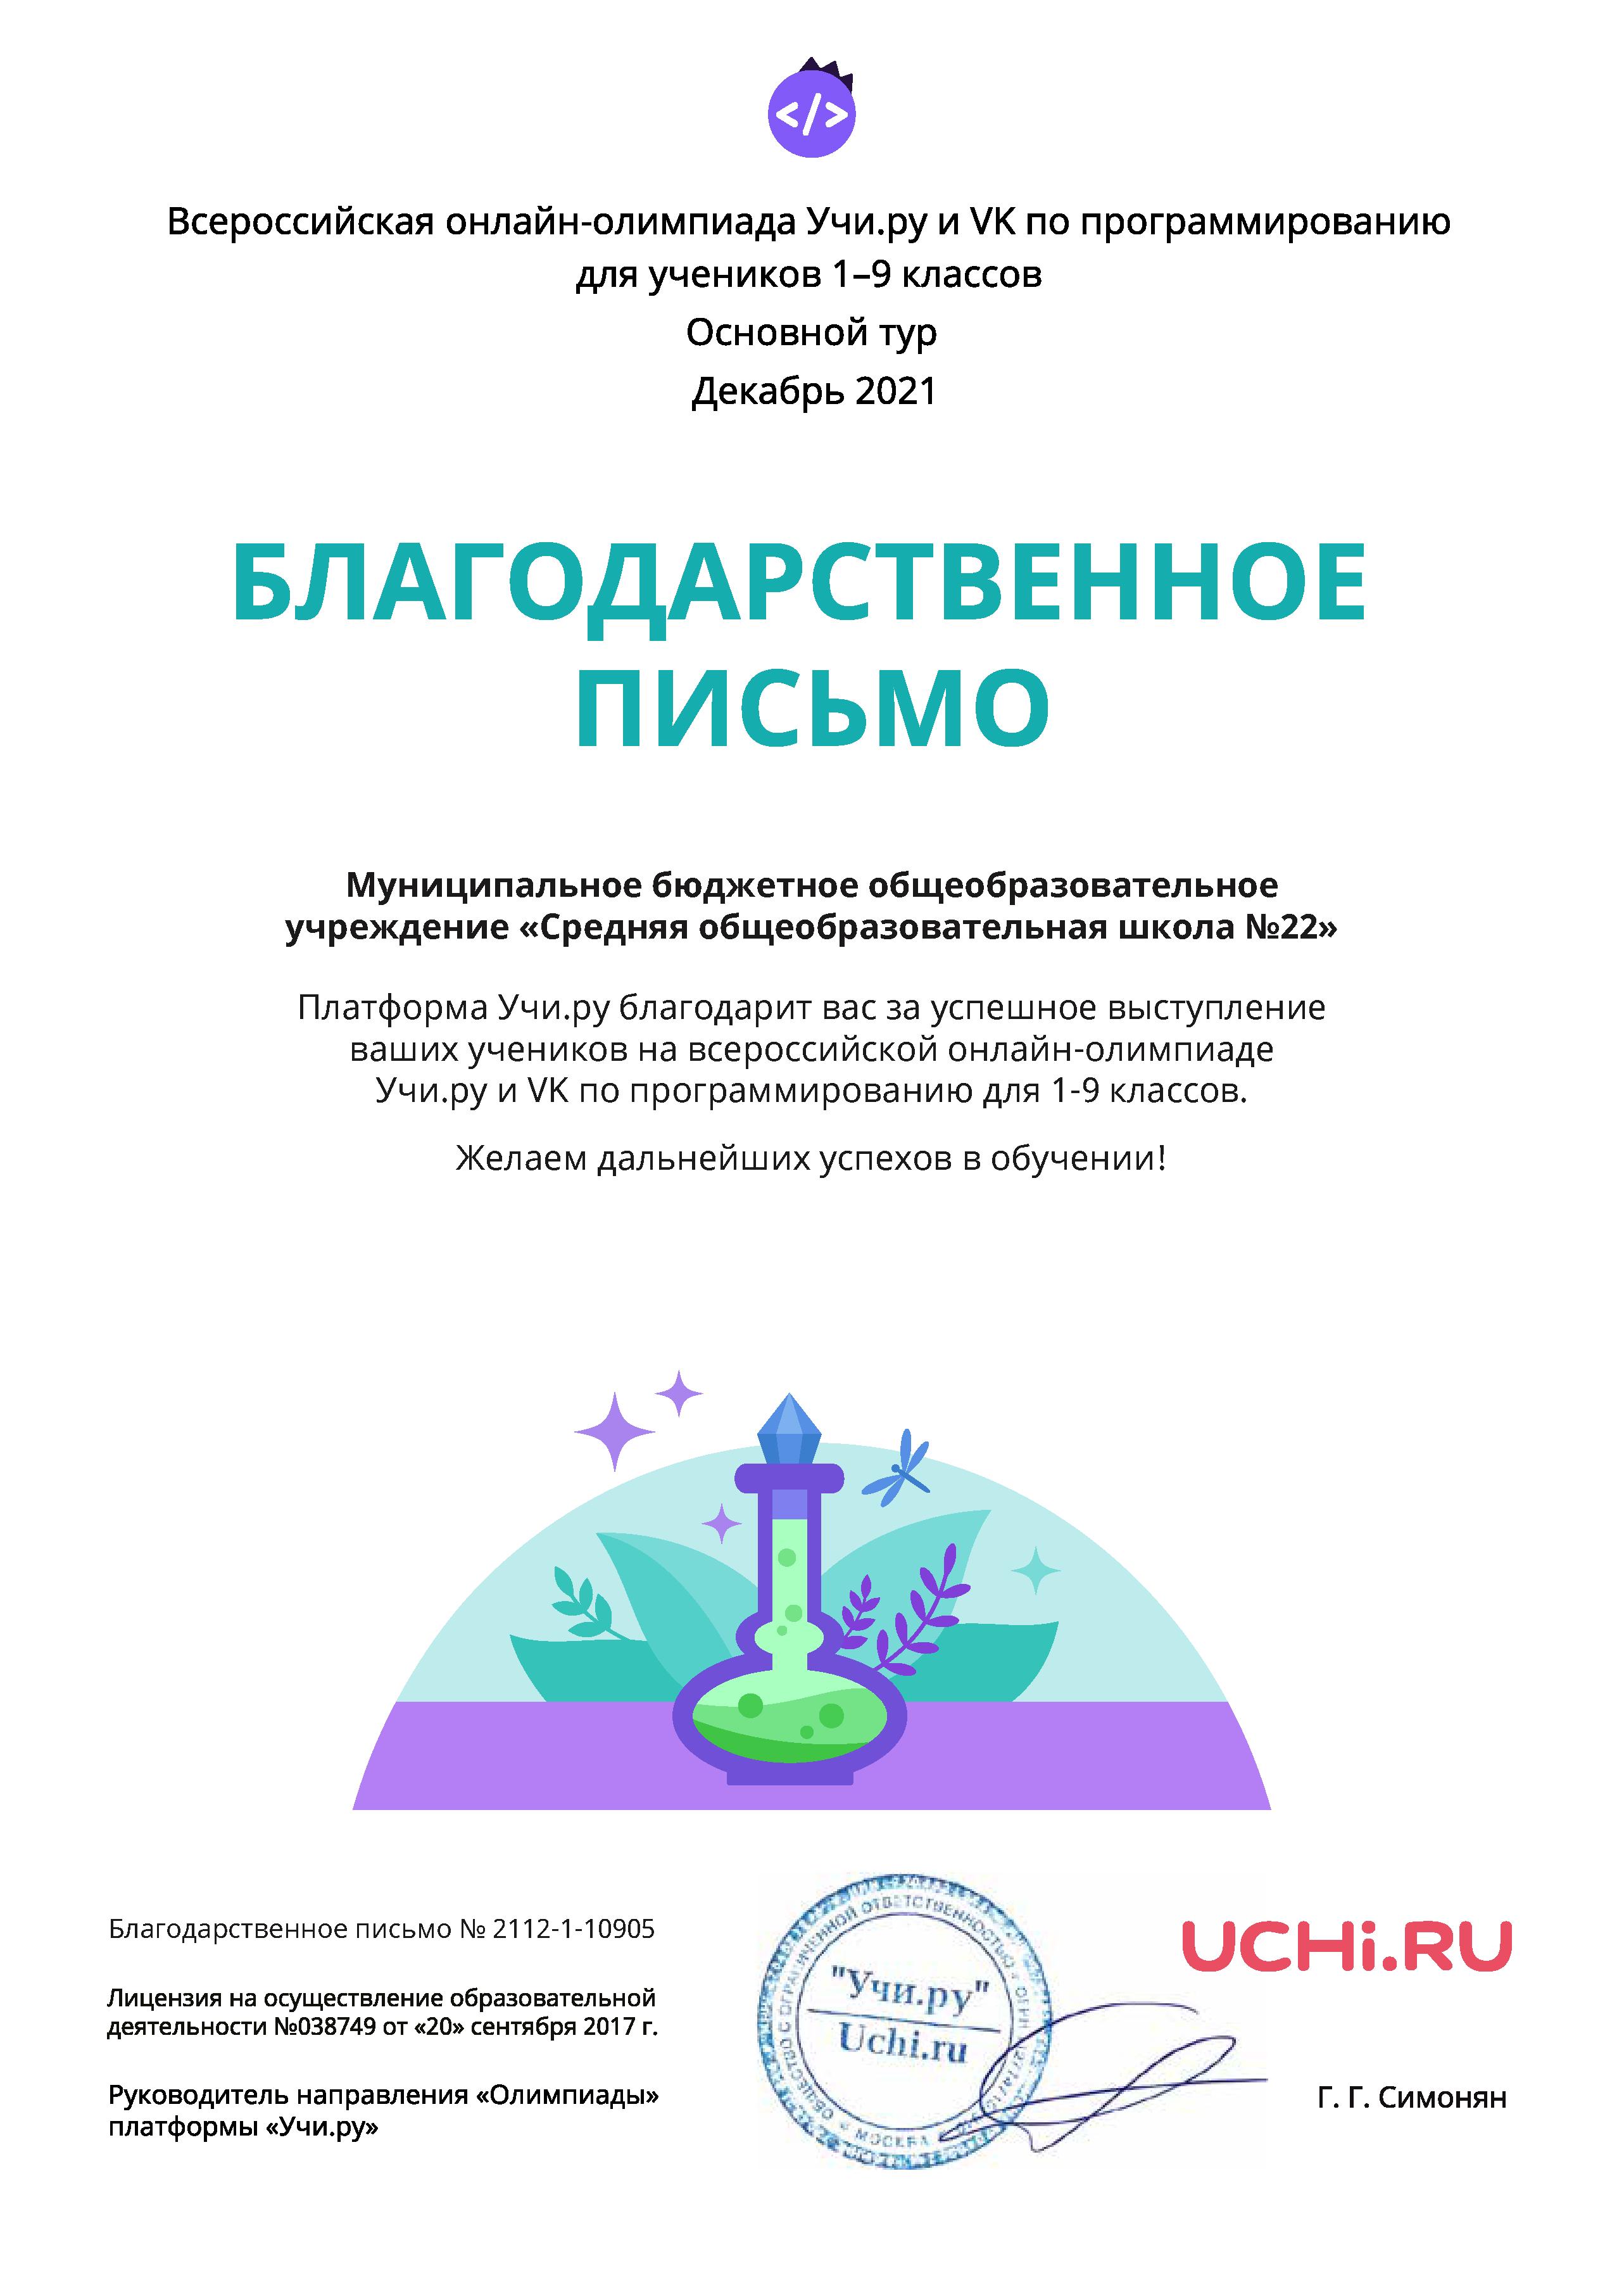 Благодарственное письмо за успешное выступление на всероссийской онлайн-олимпиаде Учи.ру и VK по программированию для 1-9 классов